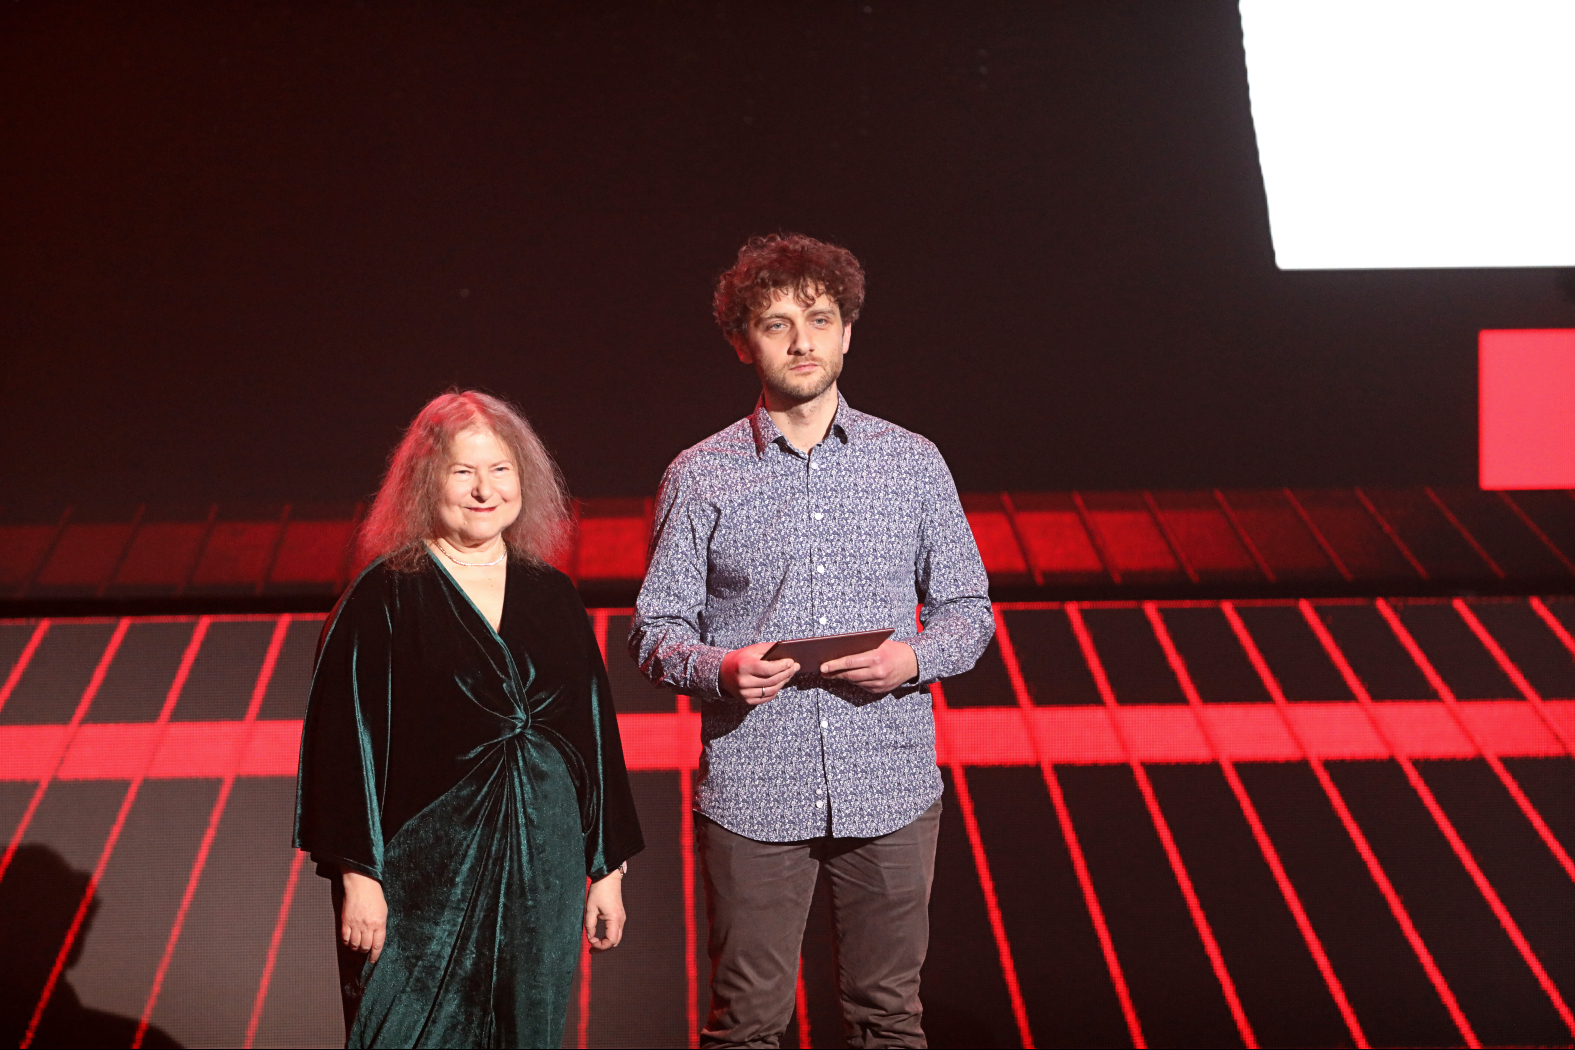 Dziennikarka Dorota Szwarcman i laureat Paszportu 2018 Aleksander Nowak wręczą nagrodę w kategorii Muzyka poważna.